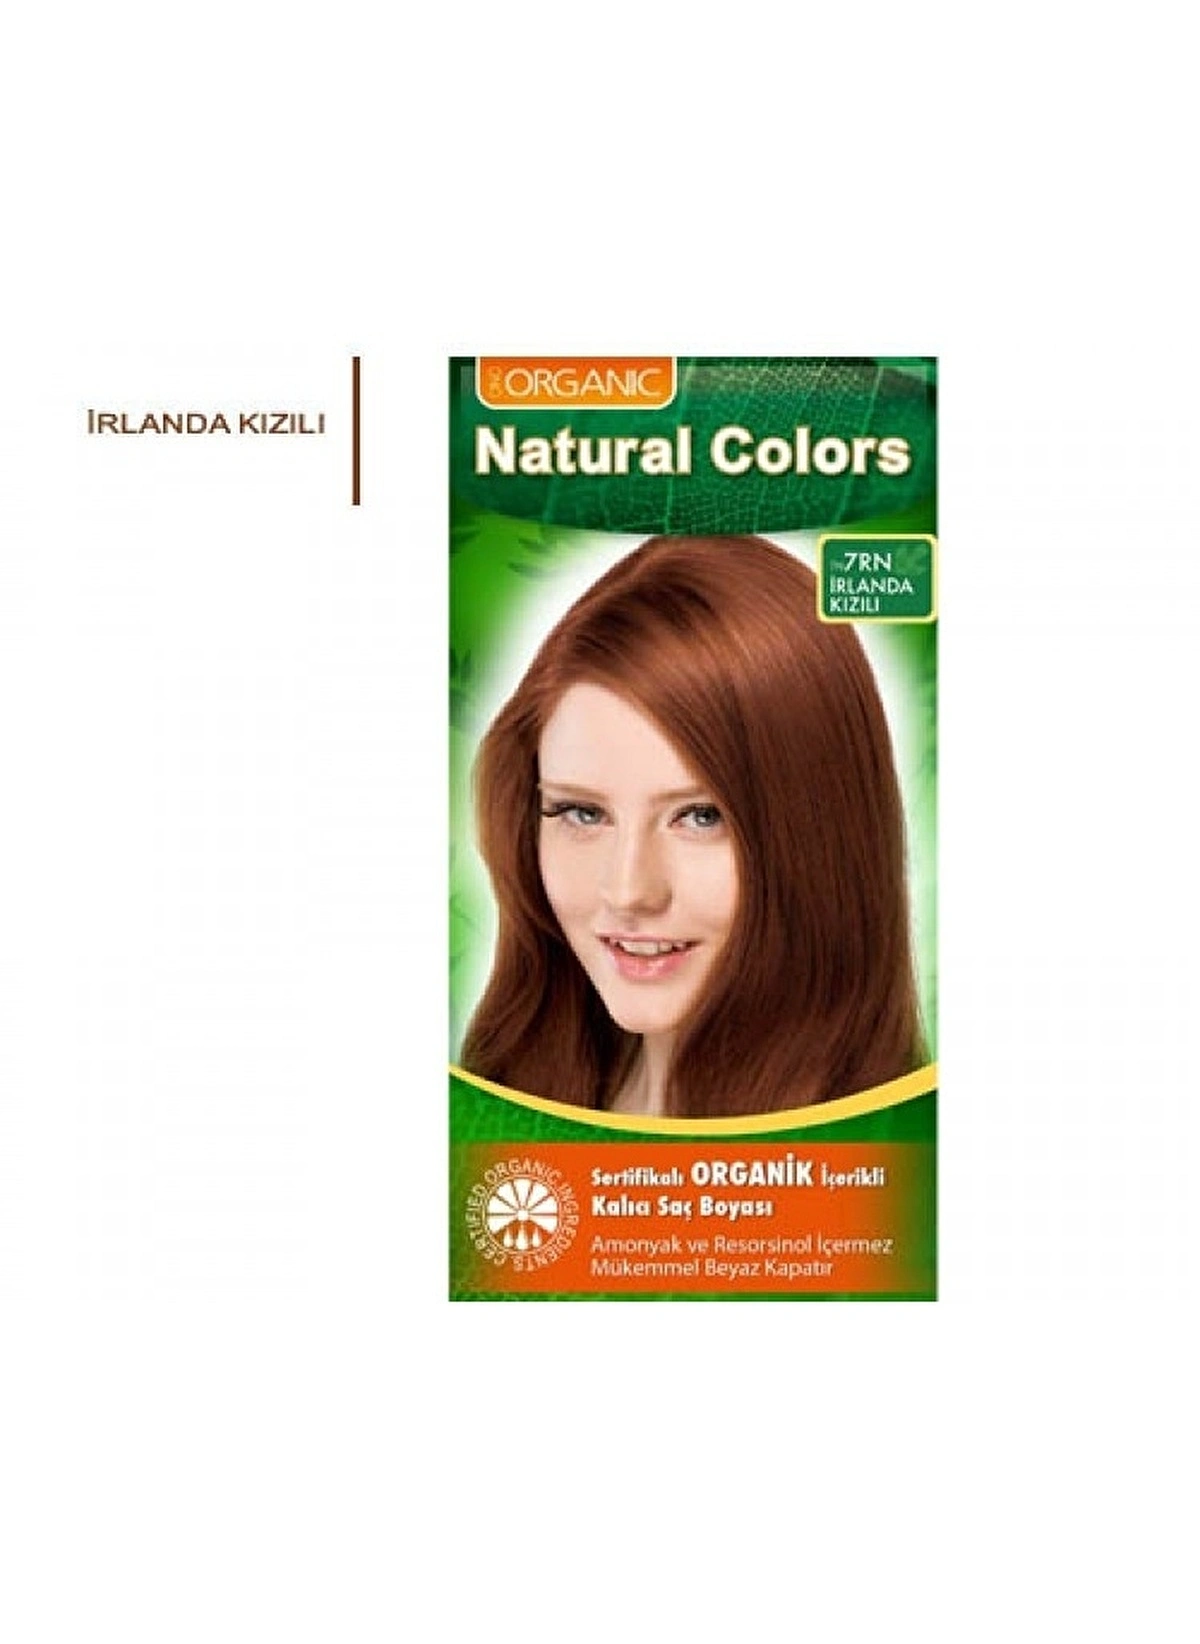 Natural Colors Organik İçerikli Saç Boyası 7RN İrlanda Kızılı